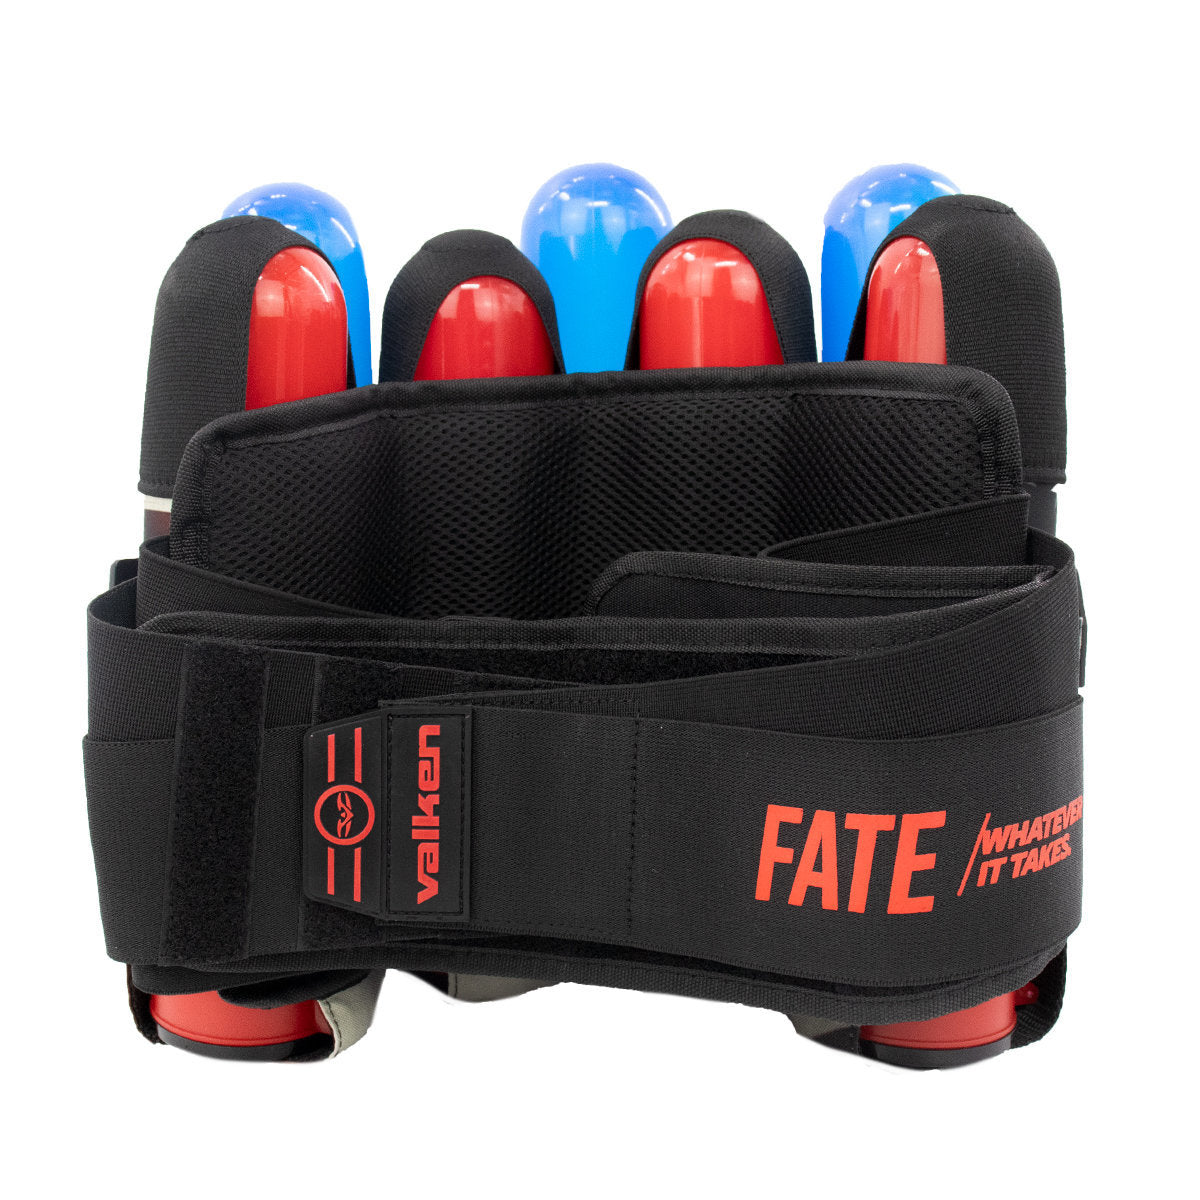 Valken Fate Gfx 4+3 Paintball Harness - Merica™ | Paintball Pod Harness